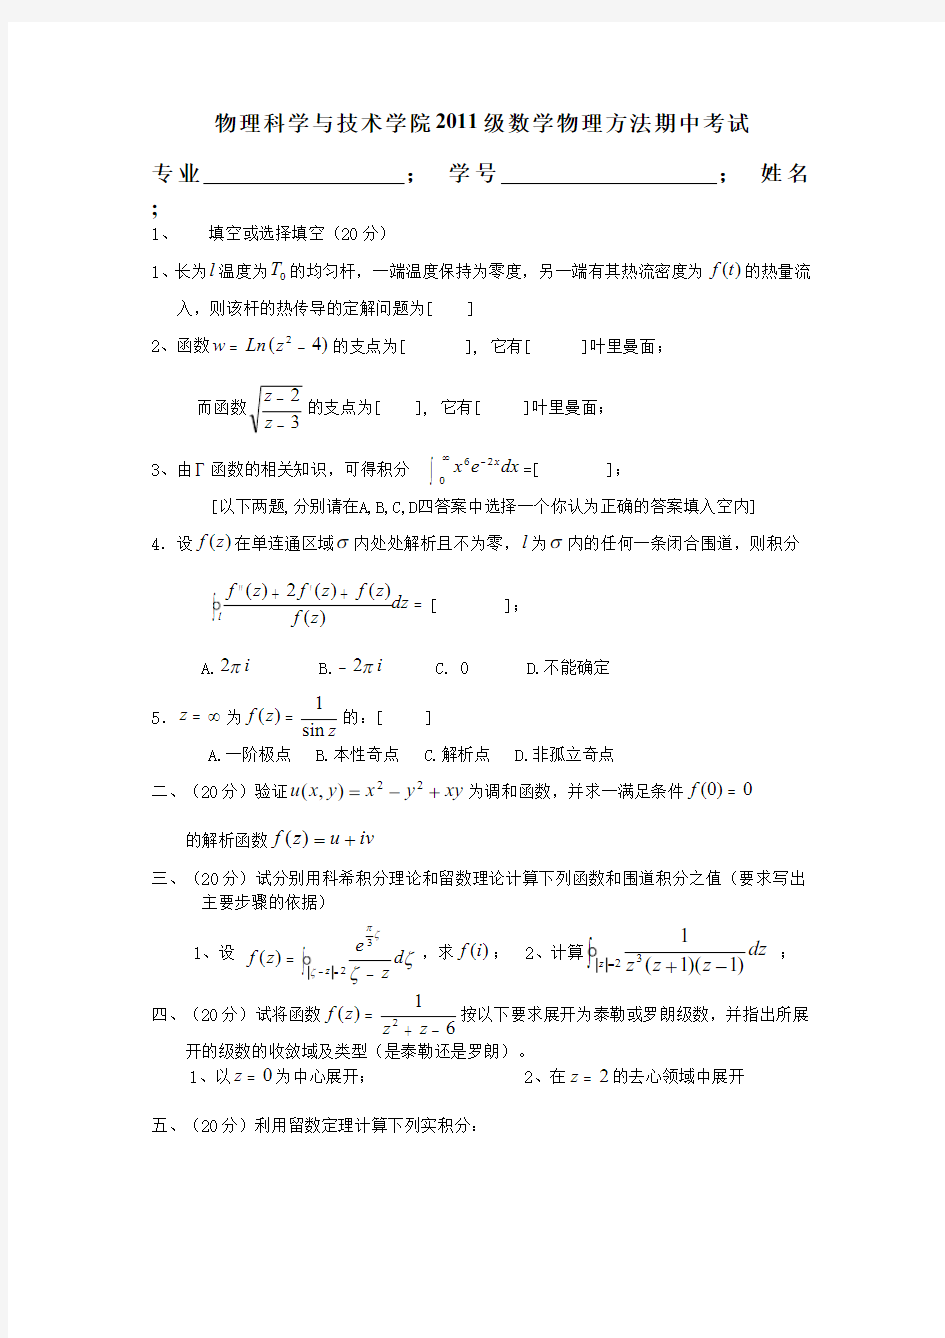 数学物理方法__武汉大学(5)--期中考试试卷